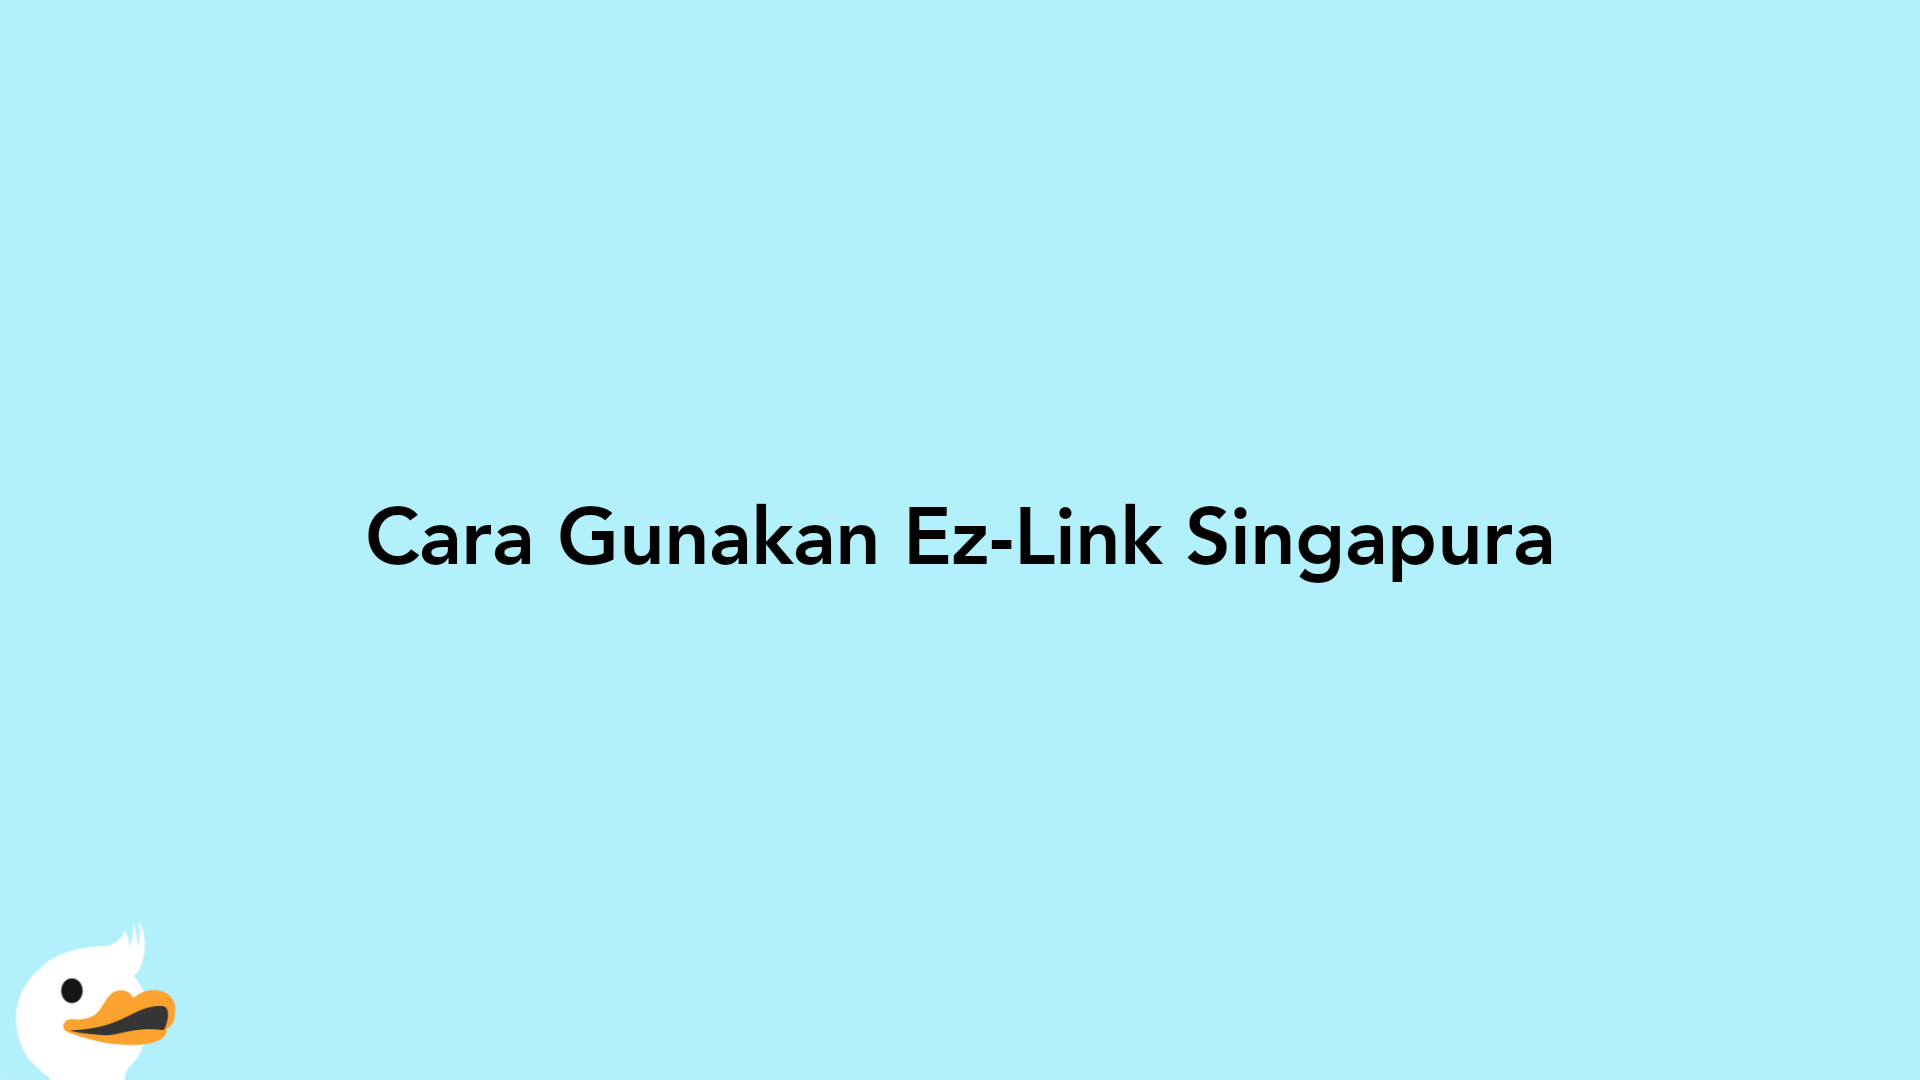 Cara Gunakan Ez-Link Singapura